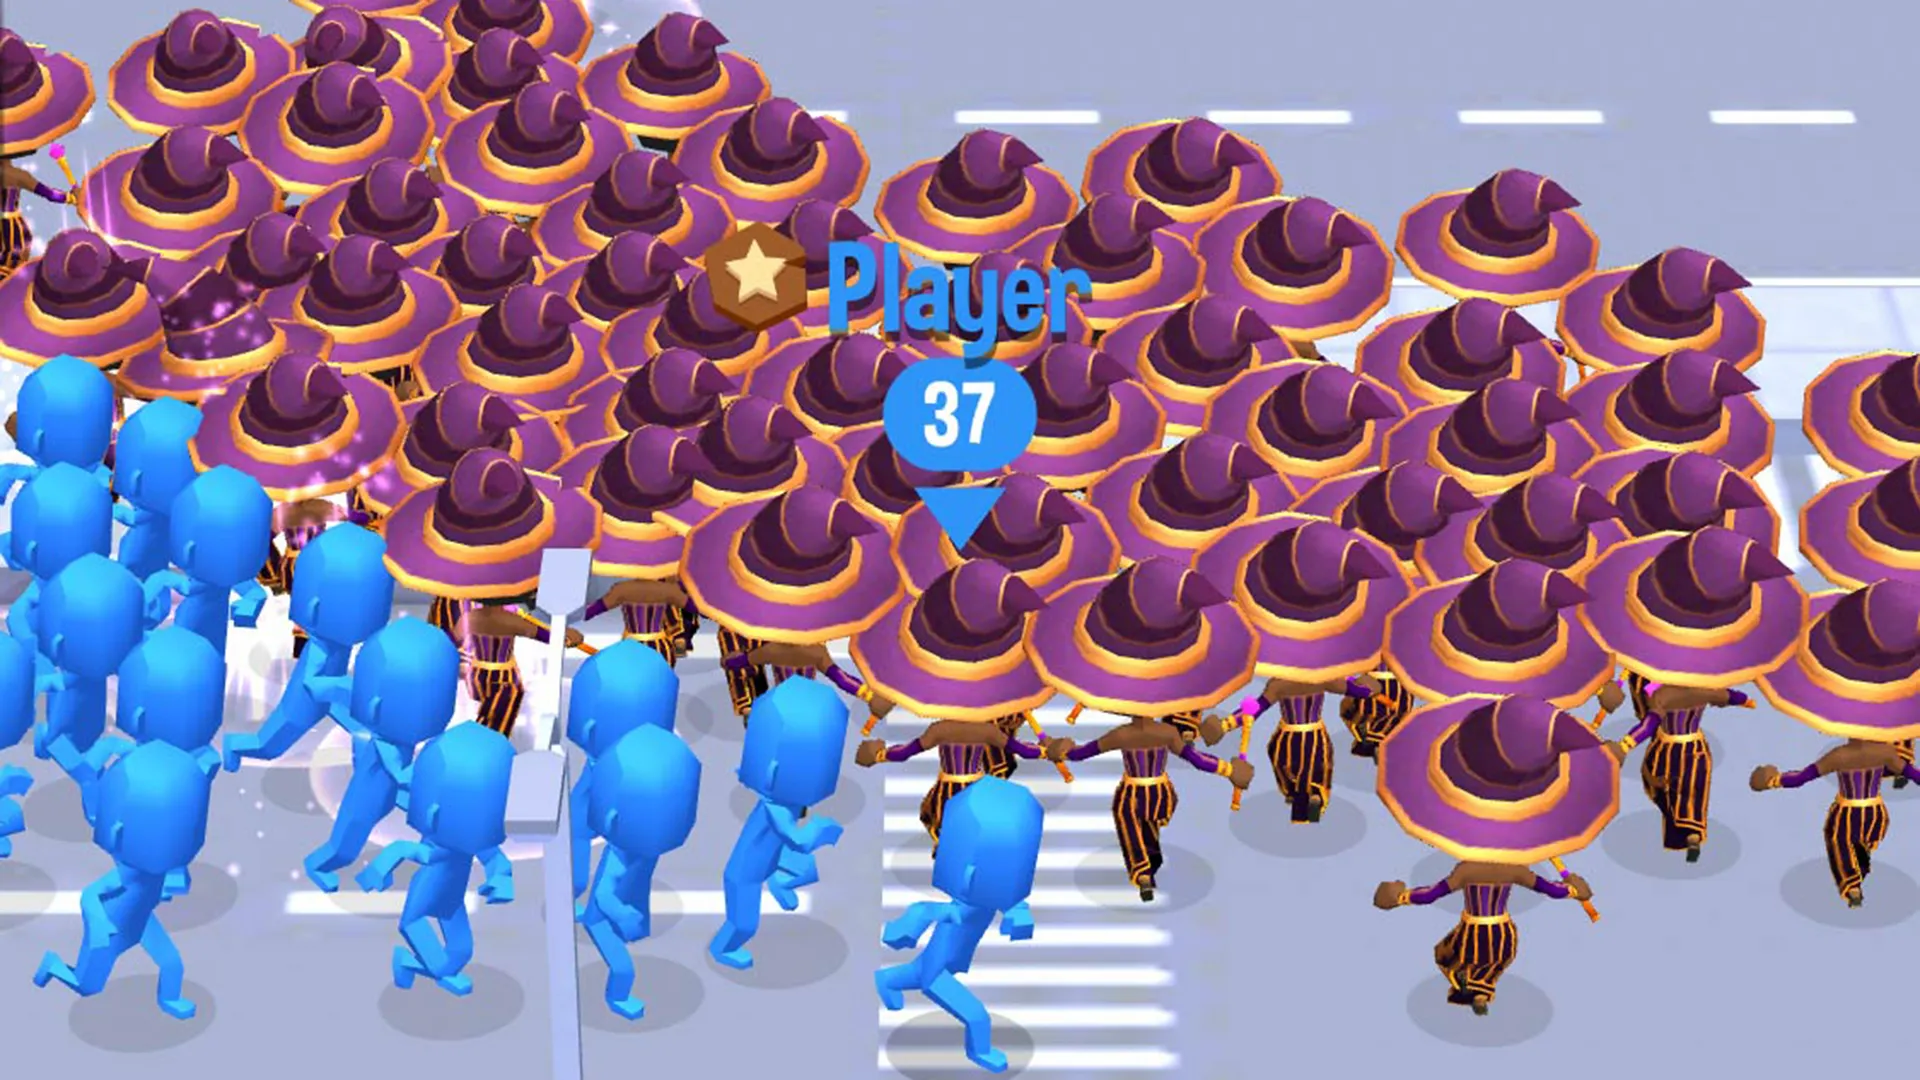 محیط بازی Crown City که کاراکترهای مختلف آبی و قرمز را نشان می دهد